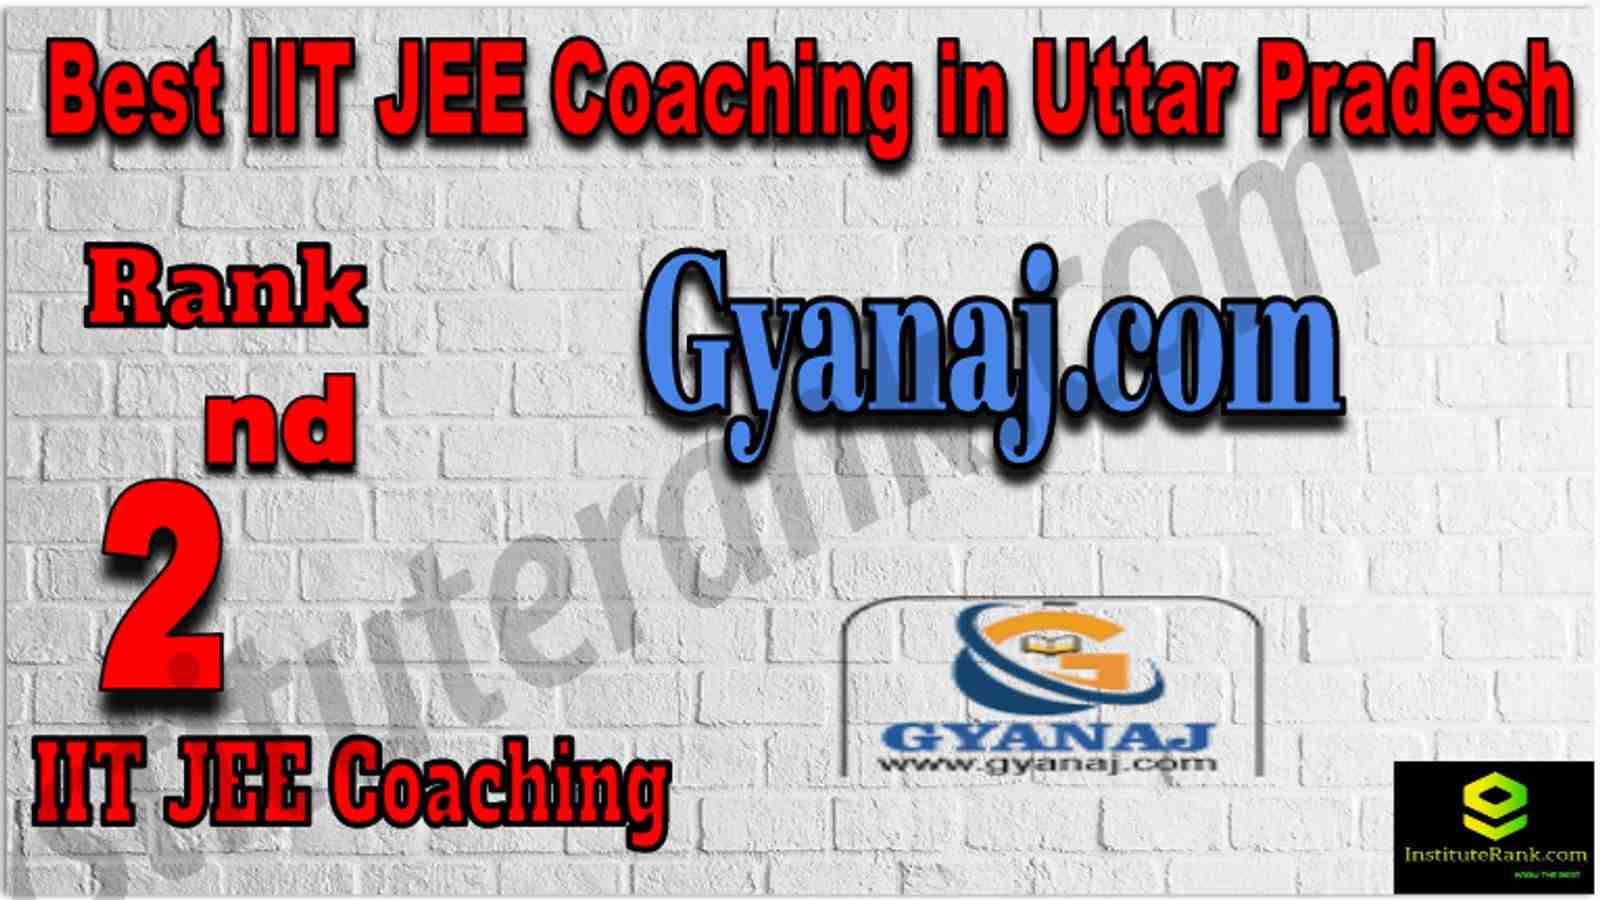 Rank 2nd Best IIT JEE Coaching in Uttar Pradesh